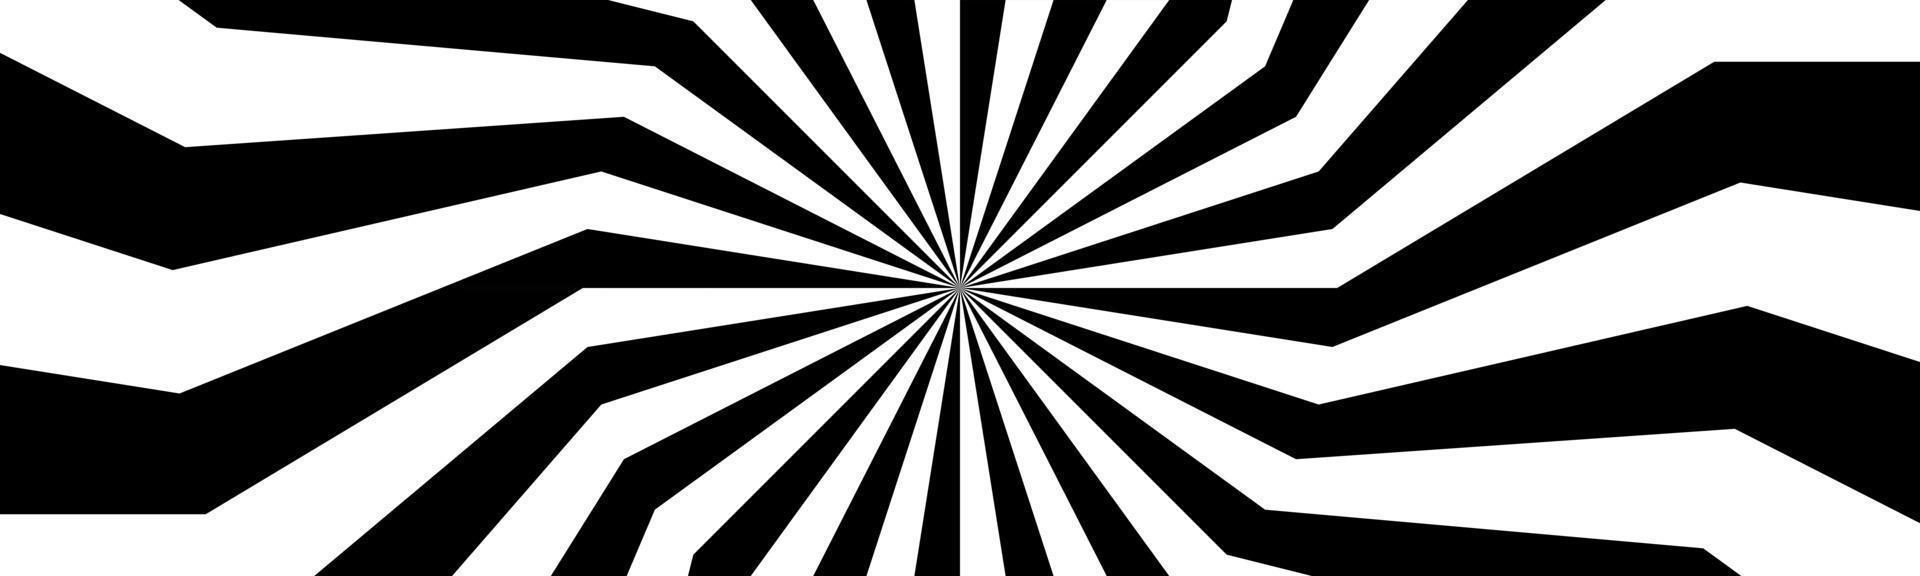 zwart-wit spiraal kop wervelende radiale banner abstracte vectorillustratie vector